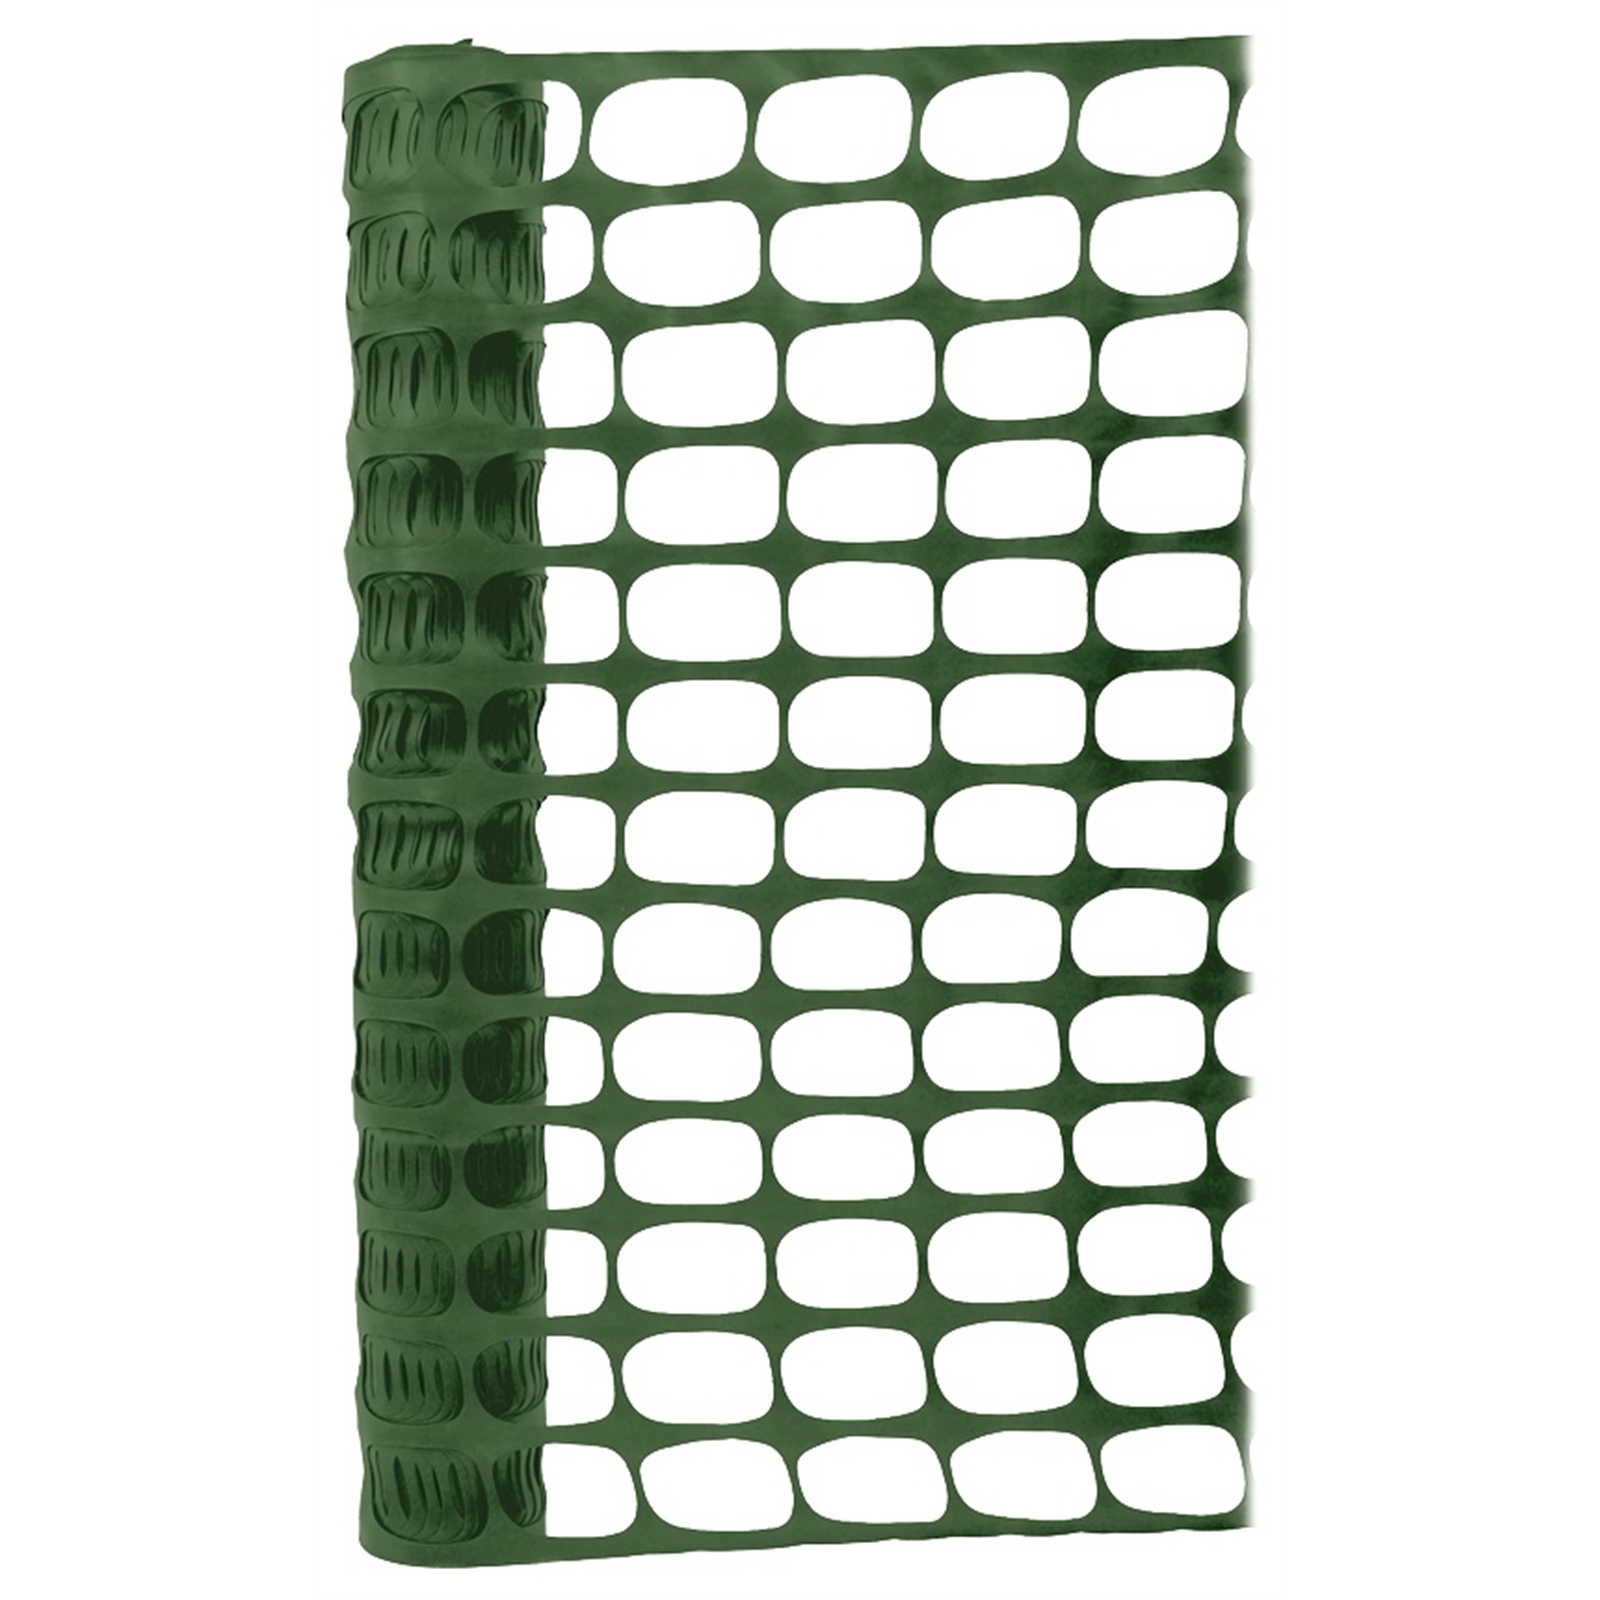 Whites 1 x 30m Green Plastic Trellis Barrier Mesh